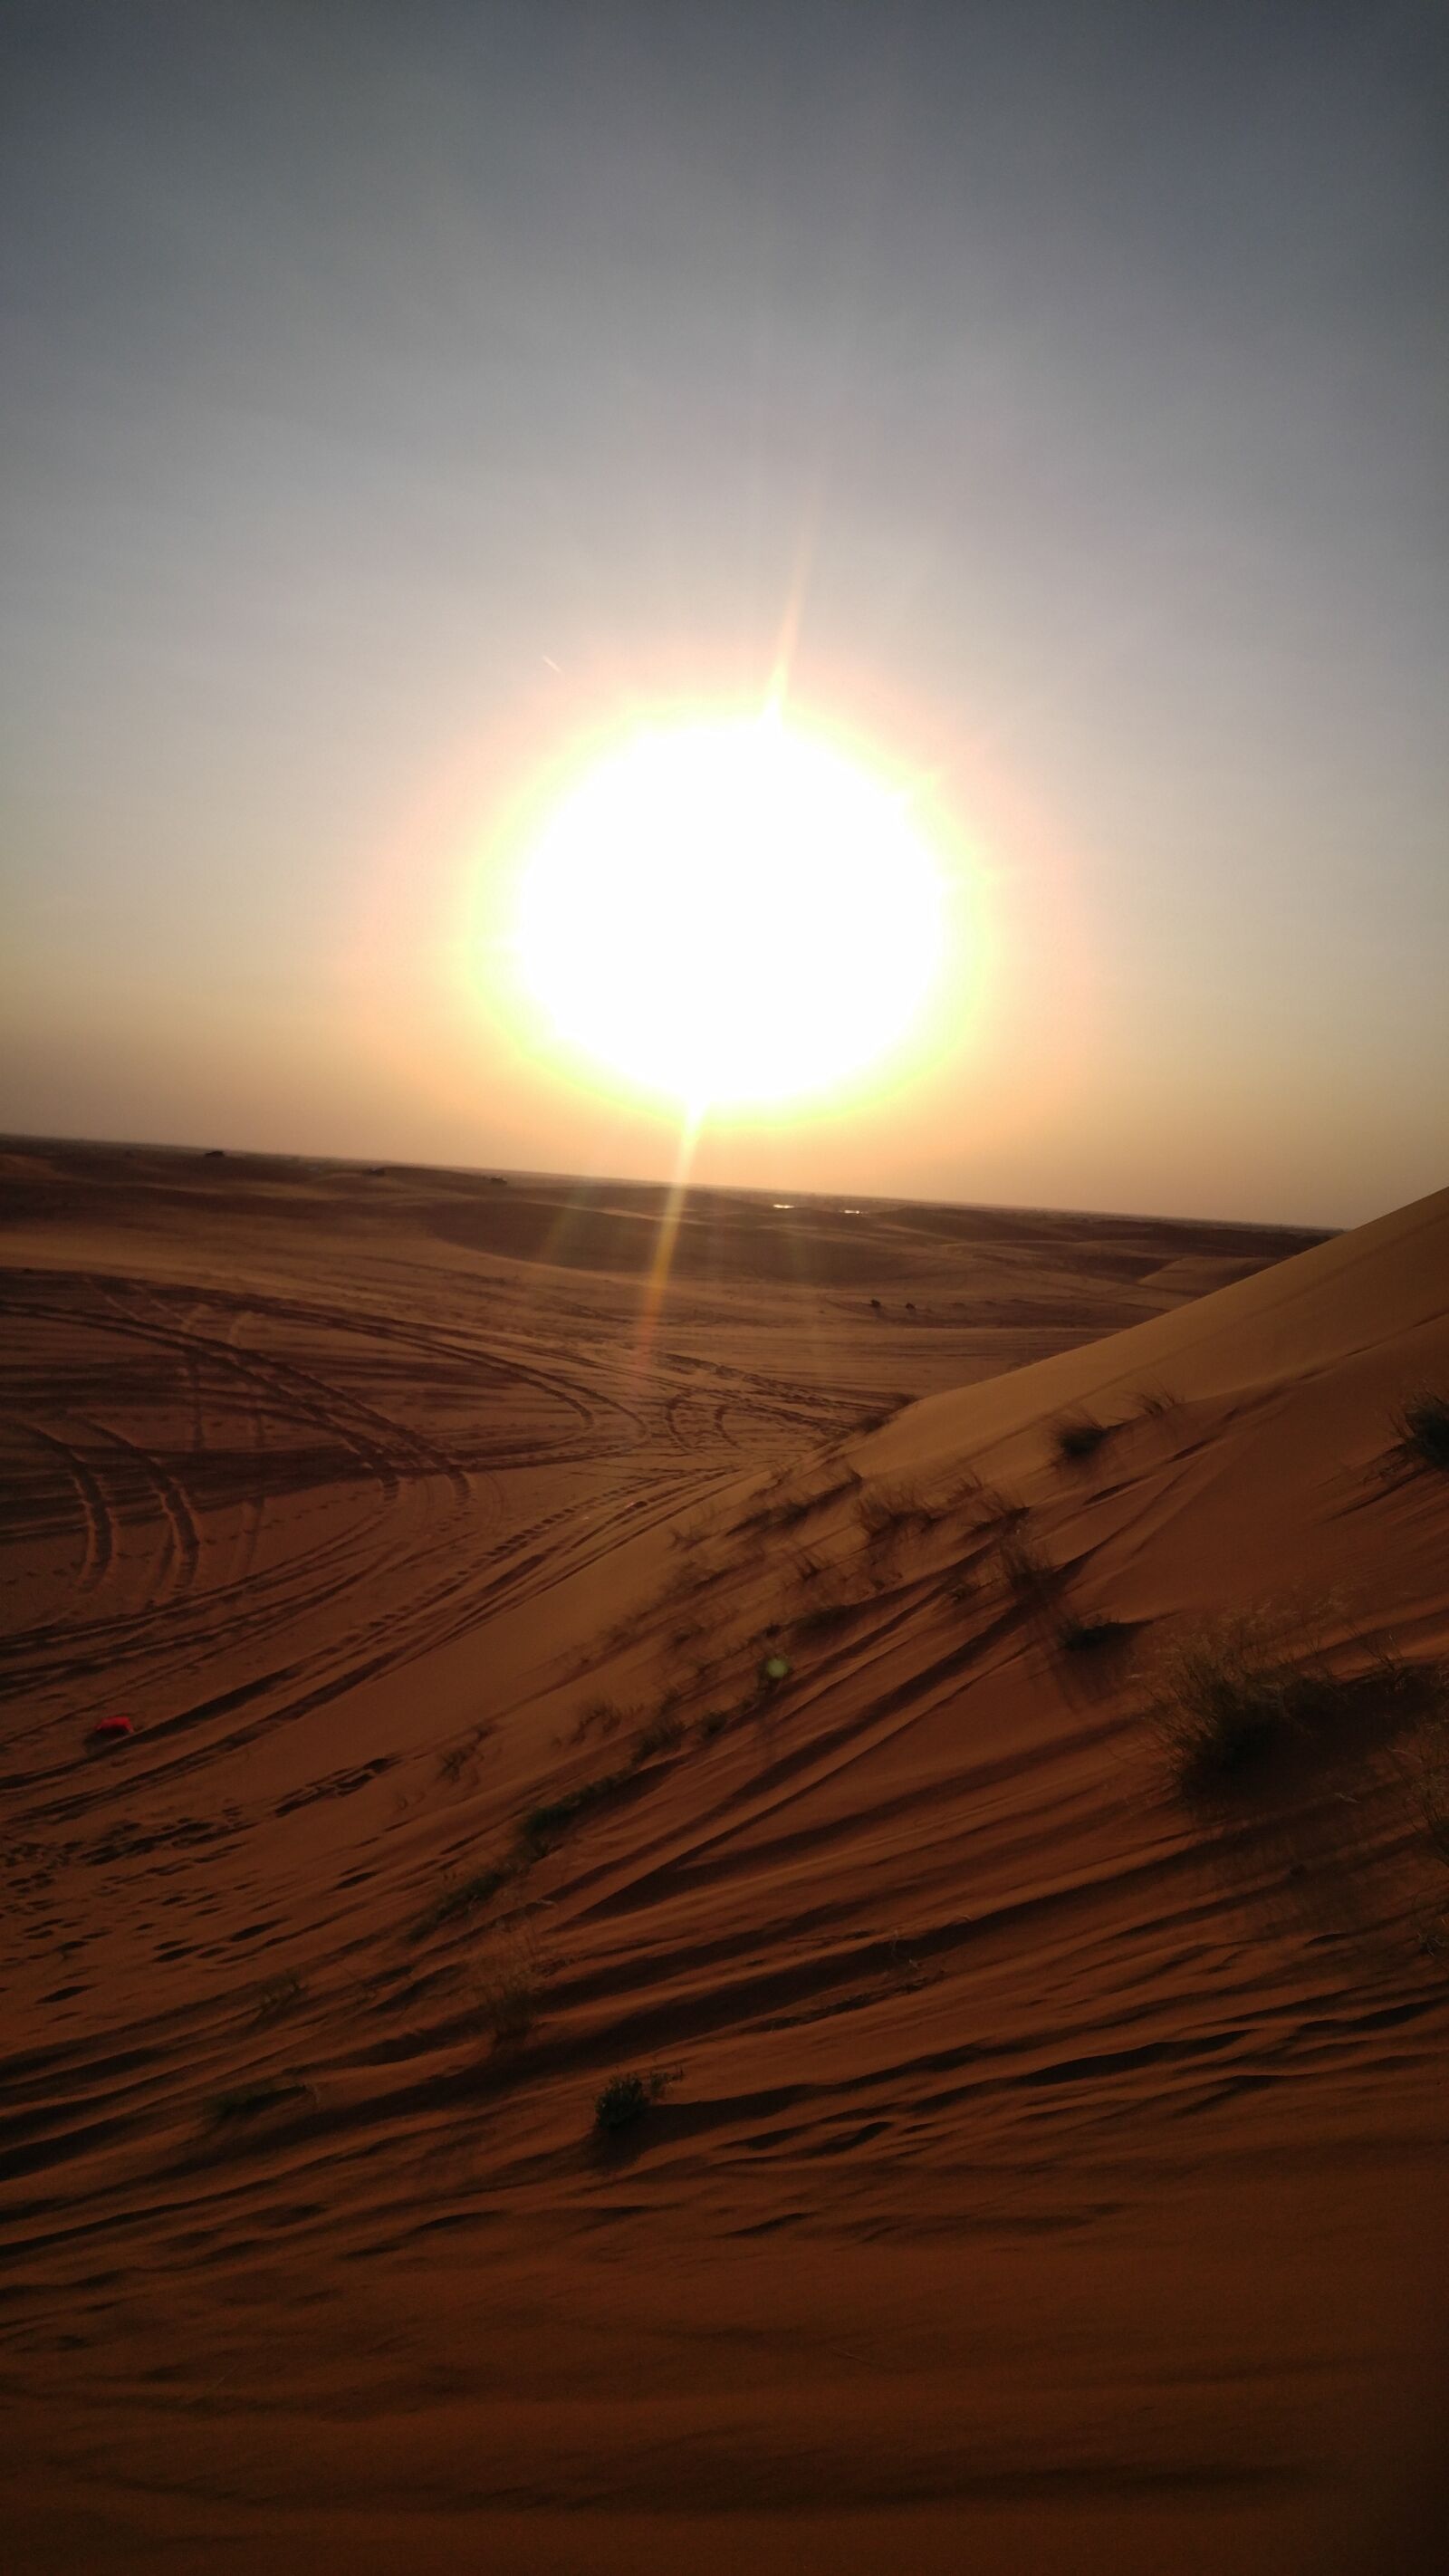 LG V10 sample photo. Scenic, view, of, desert photography